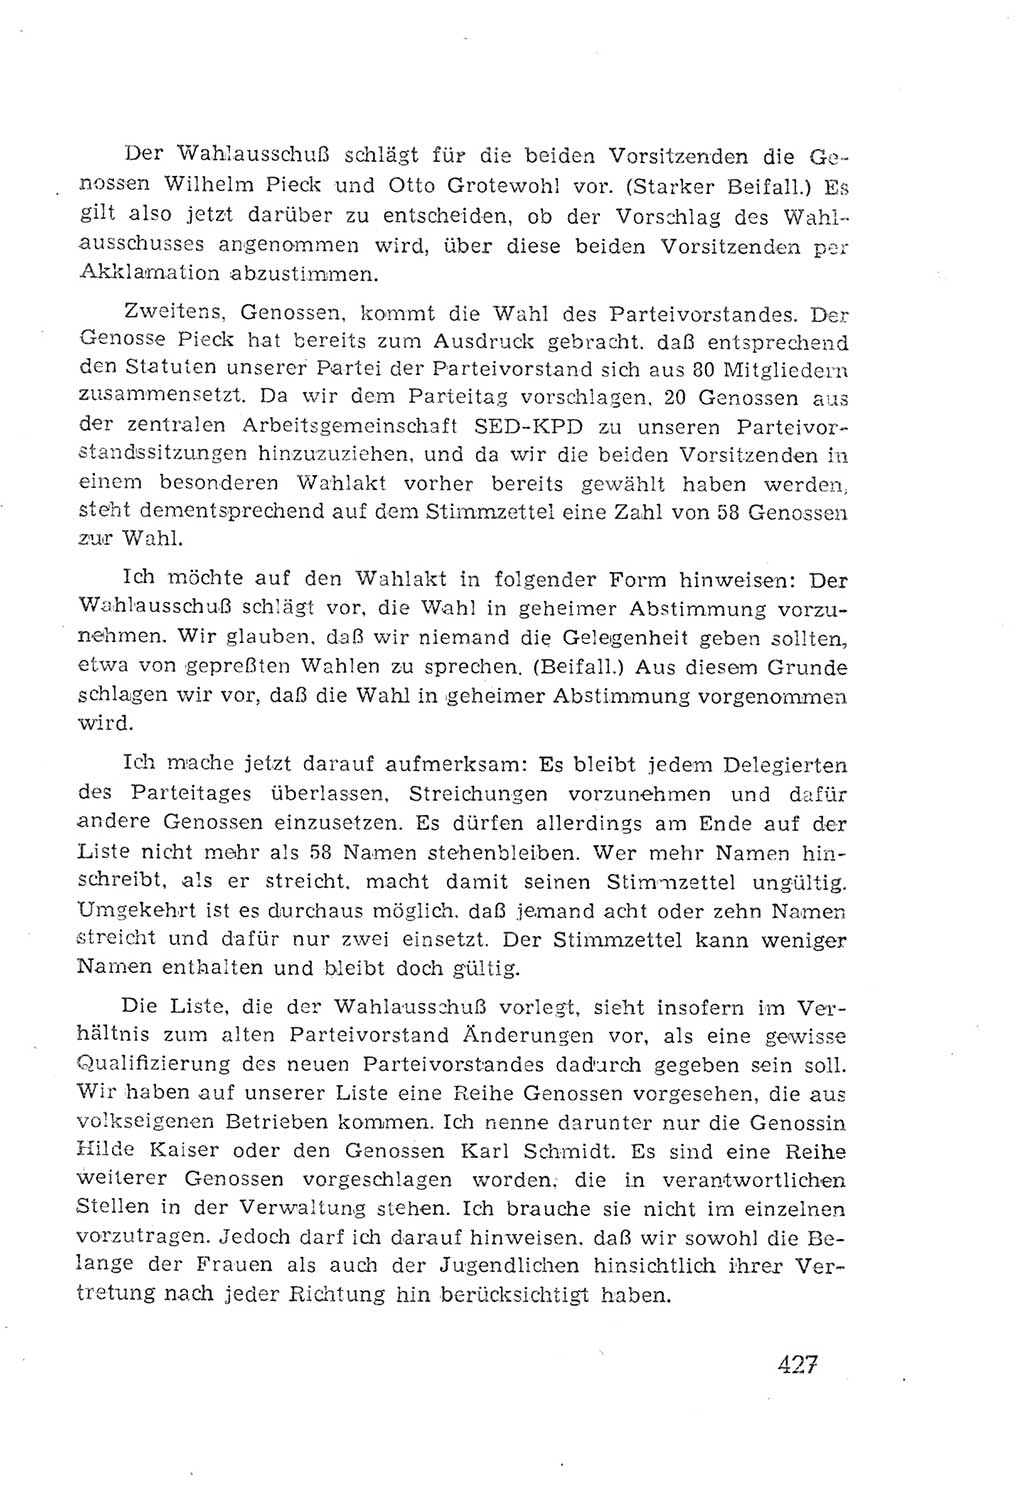 Protokoll der Verhandlungen des 2. Parteitages der Sozialistischen Einheitspartei Deutschlands (SED) [Sowjetische Besatzungszone (SBZ) Deutschlands] 1947, Seite 427 (Prot. Verh. 2. PT SED SBZ Dtl. 1947, S. 427)